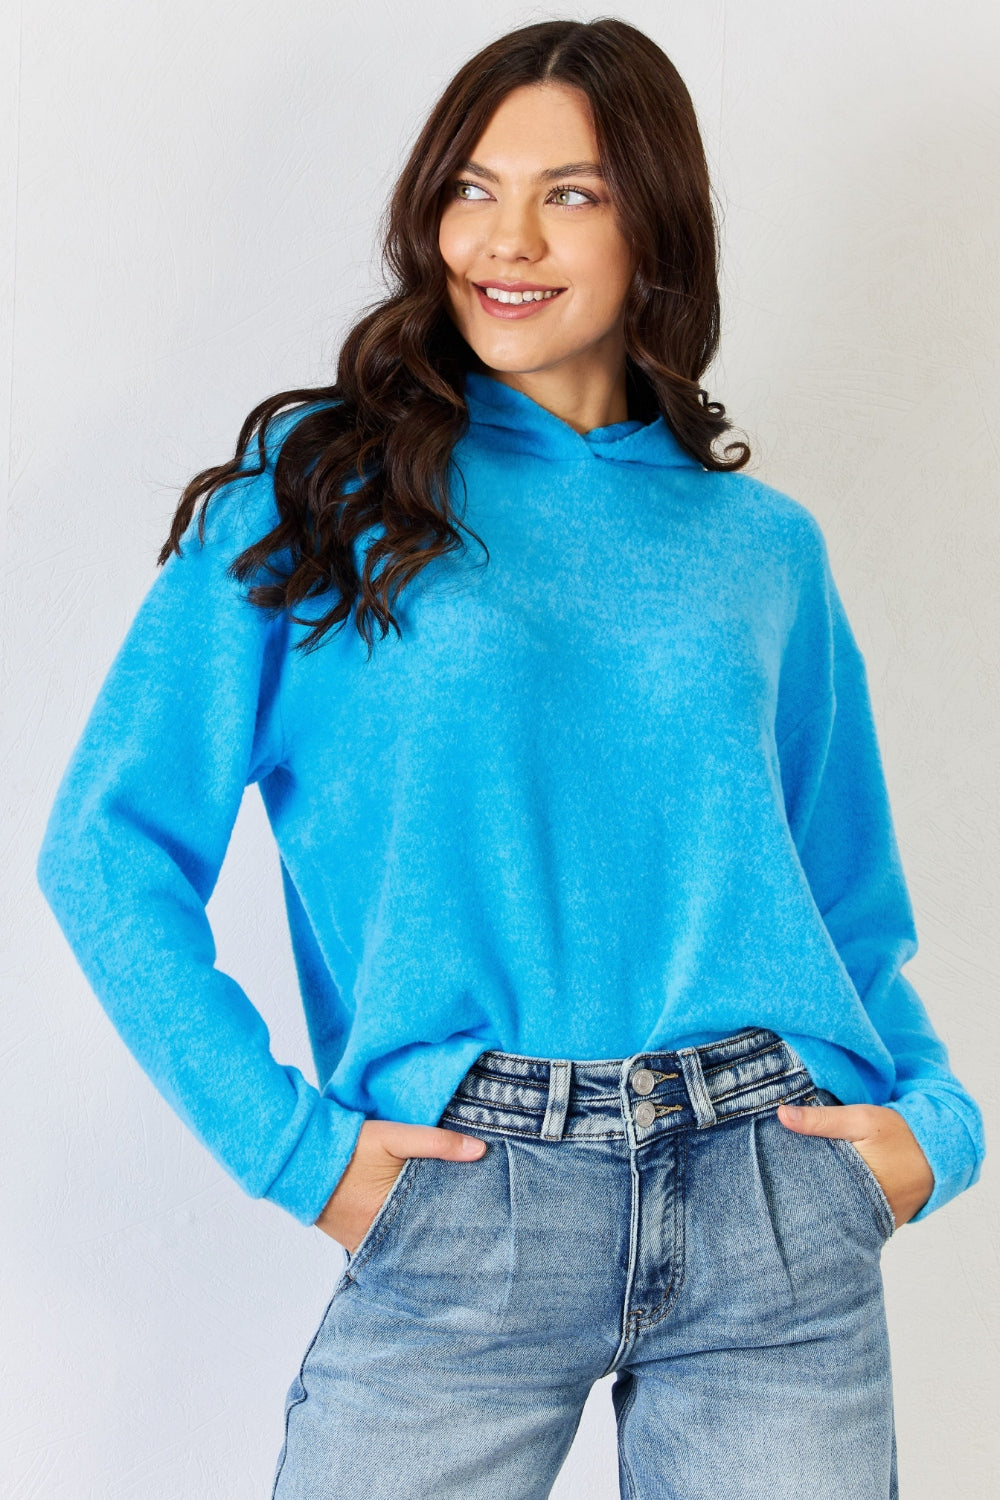 Women's Sky Blue Hoodie Sweater Oversized